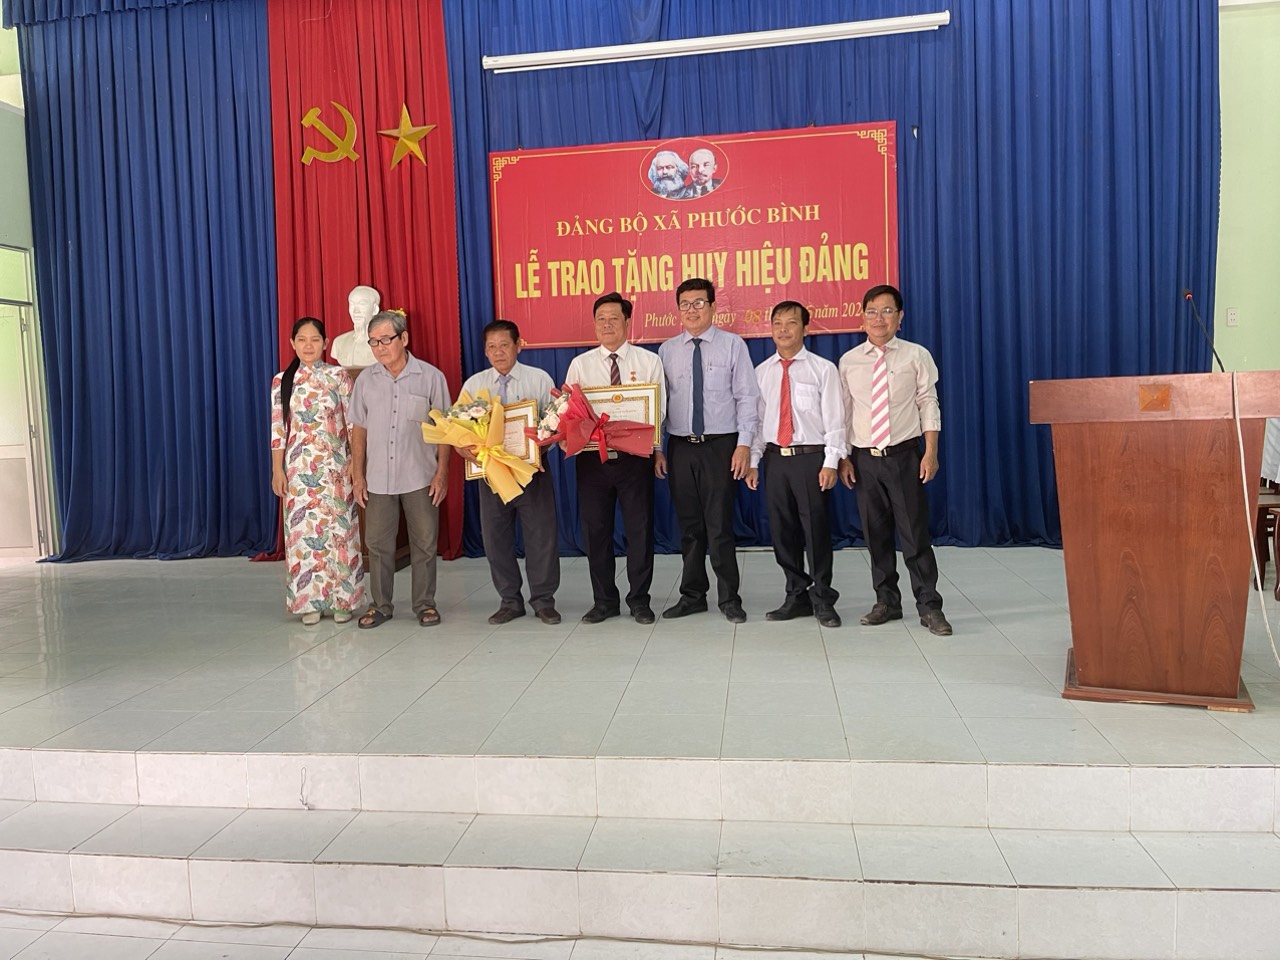 Ông Hồ Văn Hồng - Phó bí thư Thị ủy Trảng Bàng trao huy hiệu cho Đảng viên